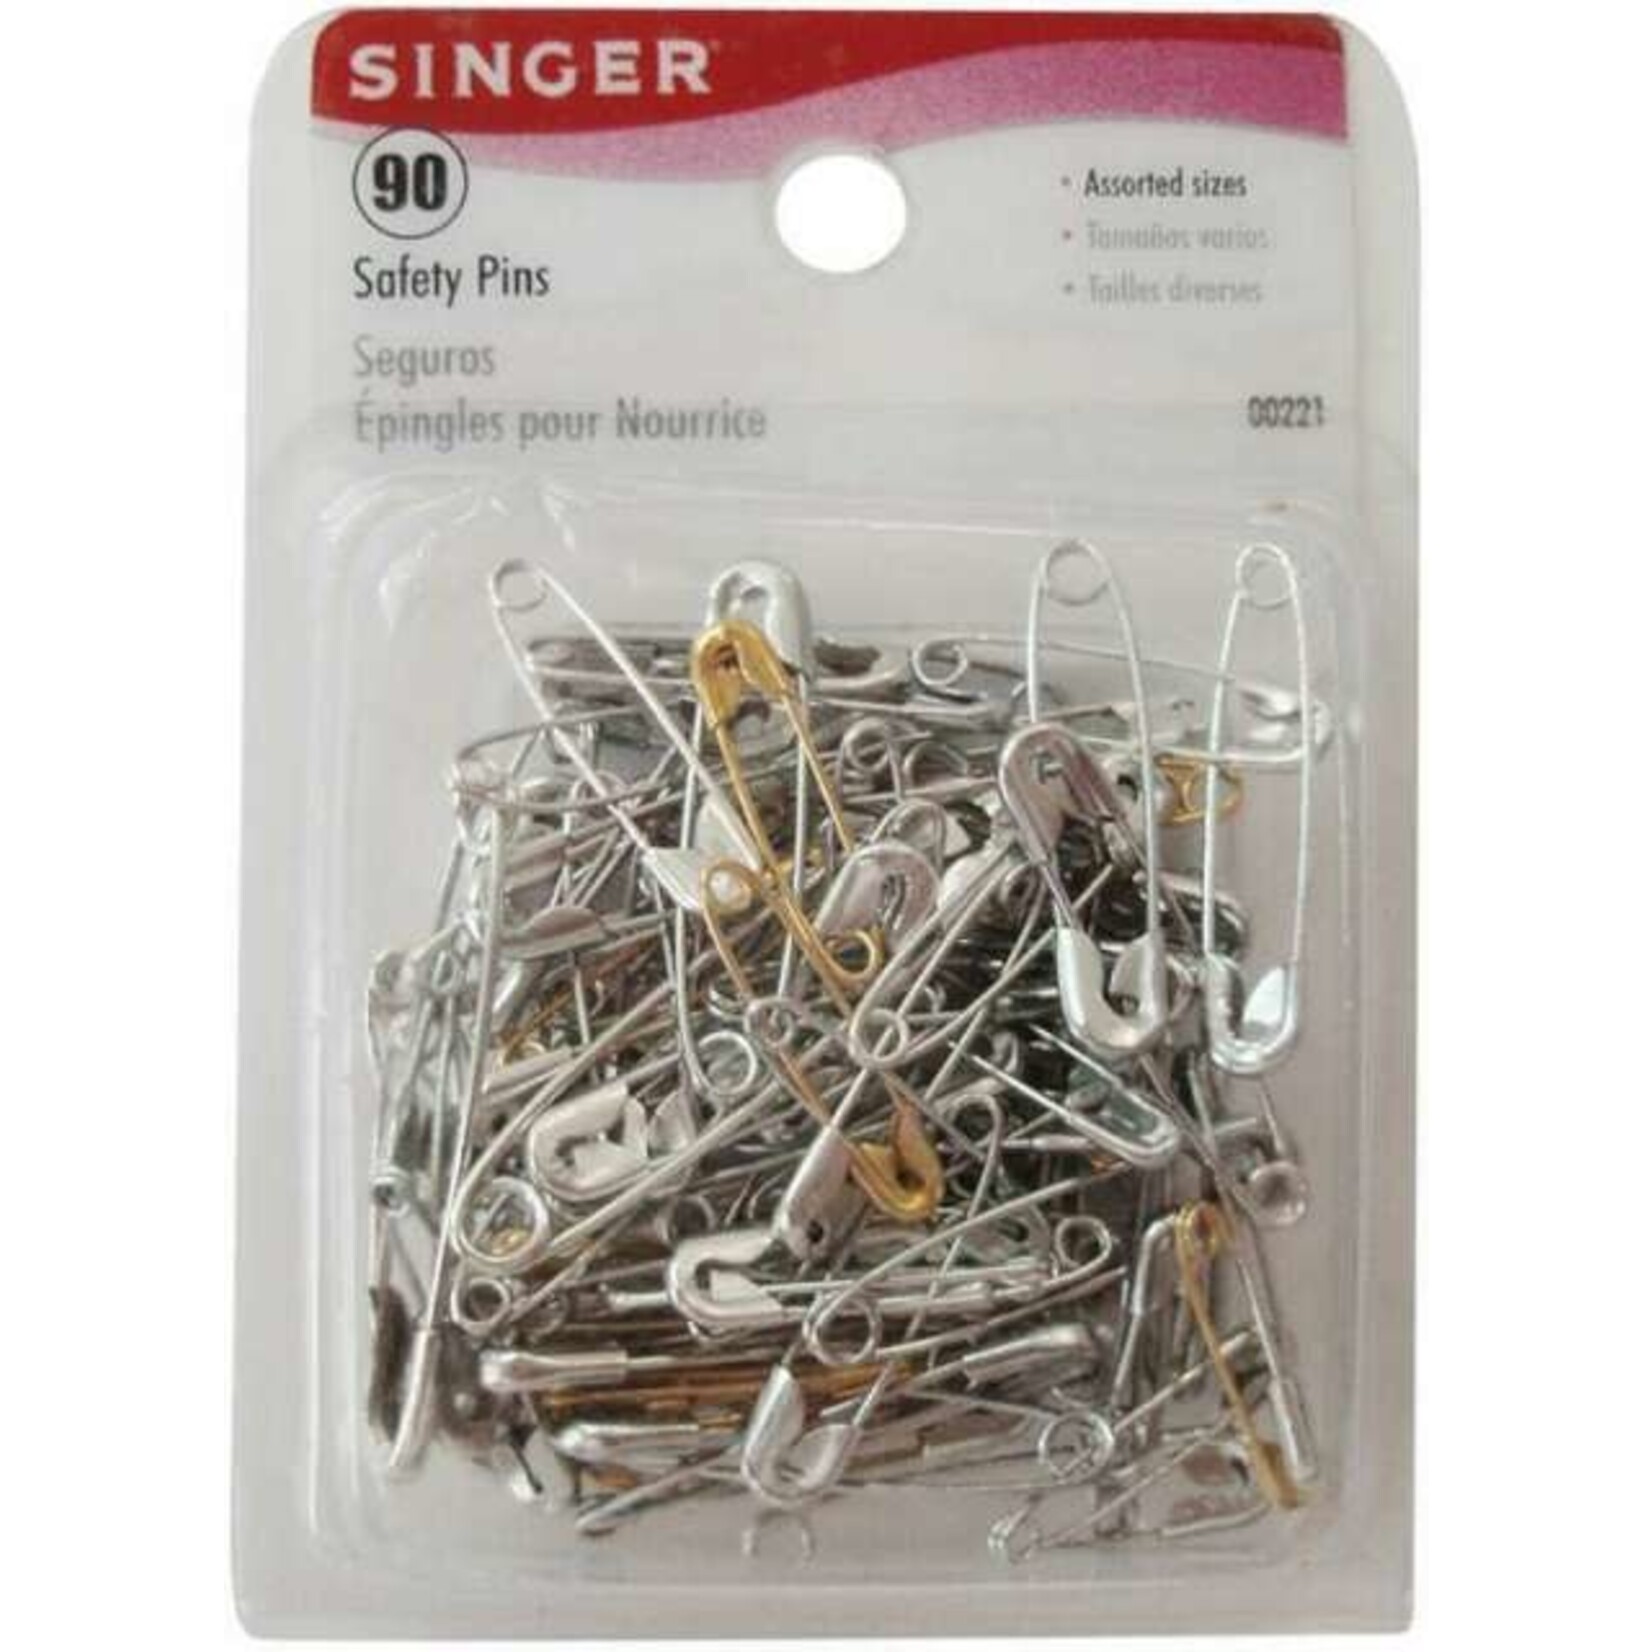 Singer 90 Asst Safety Pins Size 00